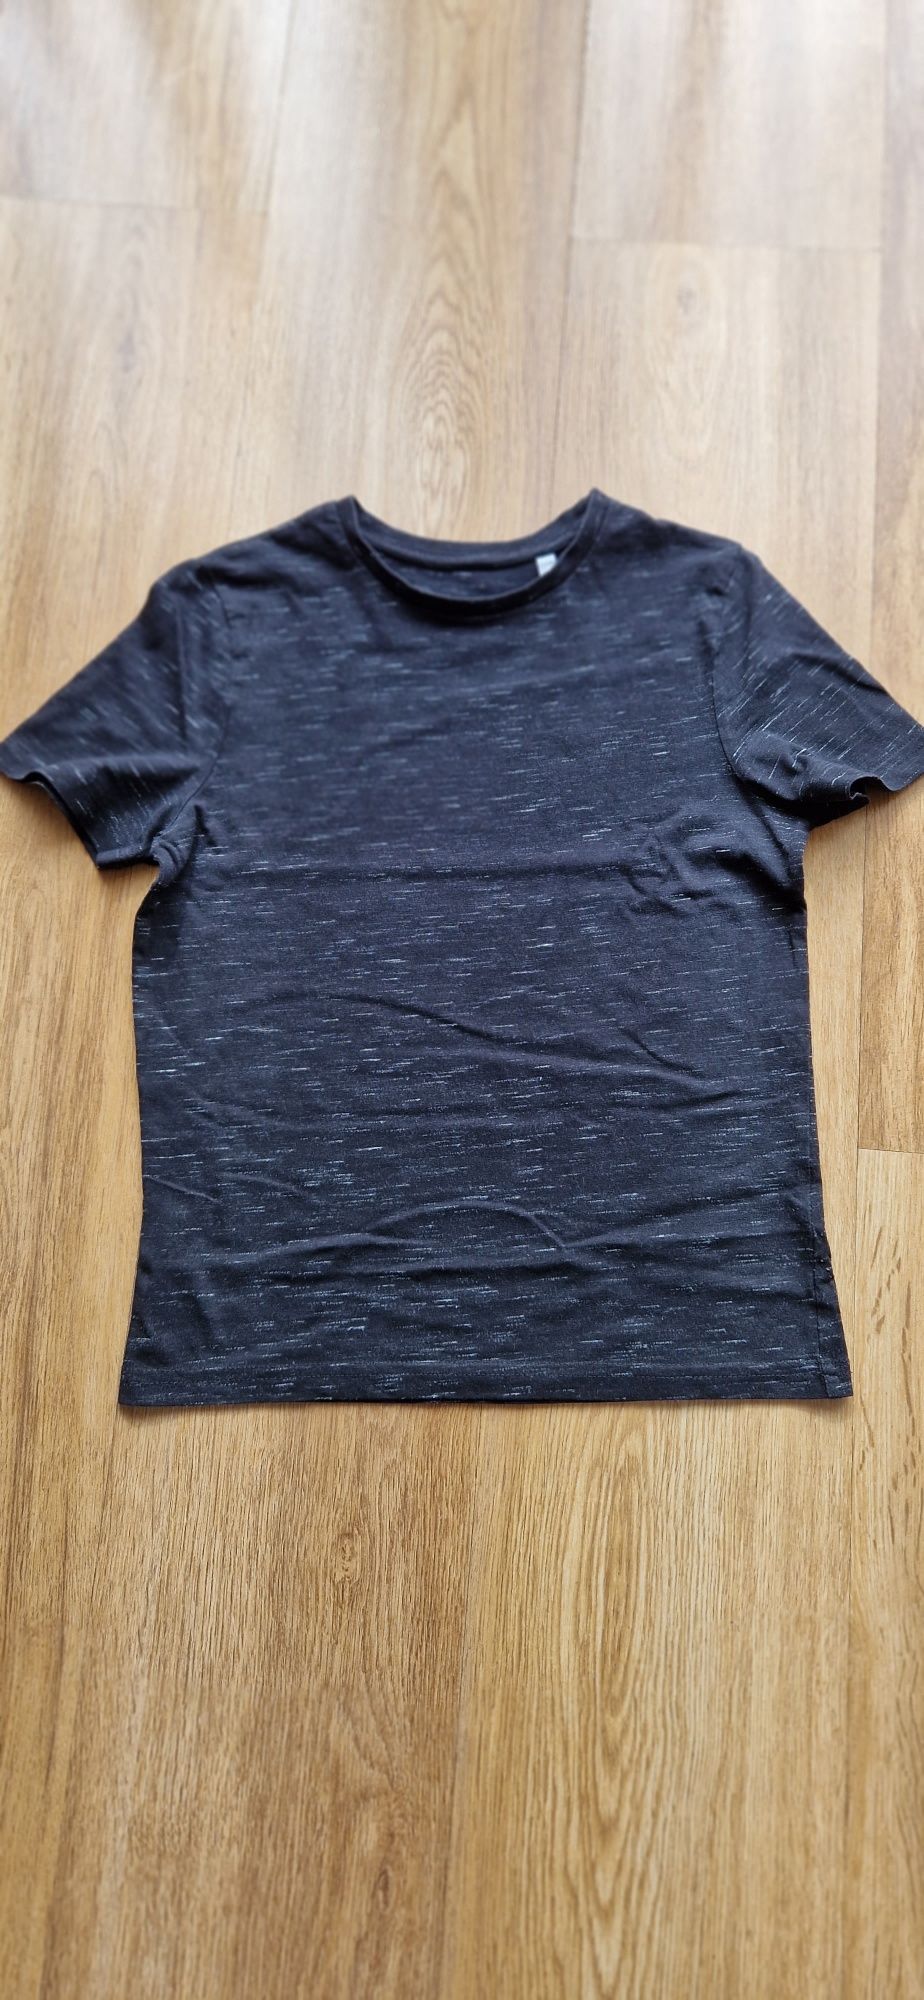 T-shirt koszulka bawełniana C&A dla chłopca rozmiar 134/140, 8-10 lat